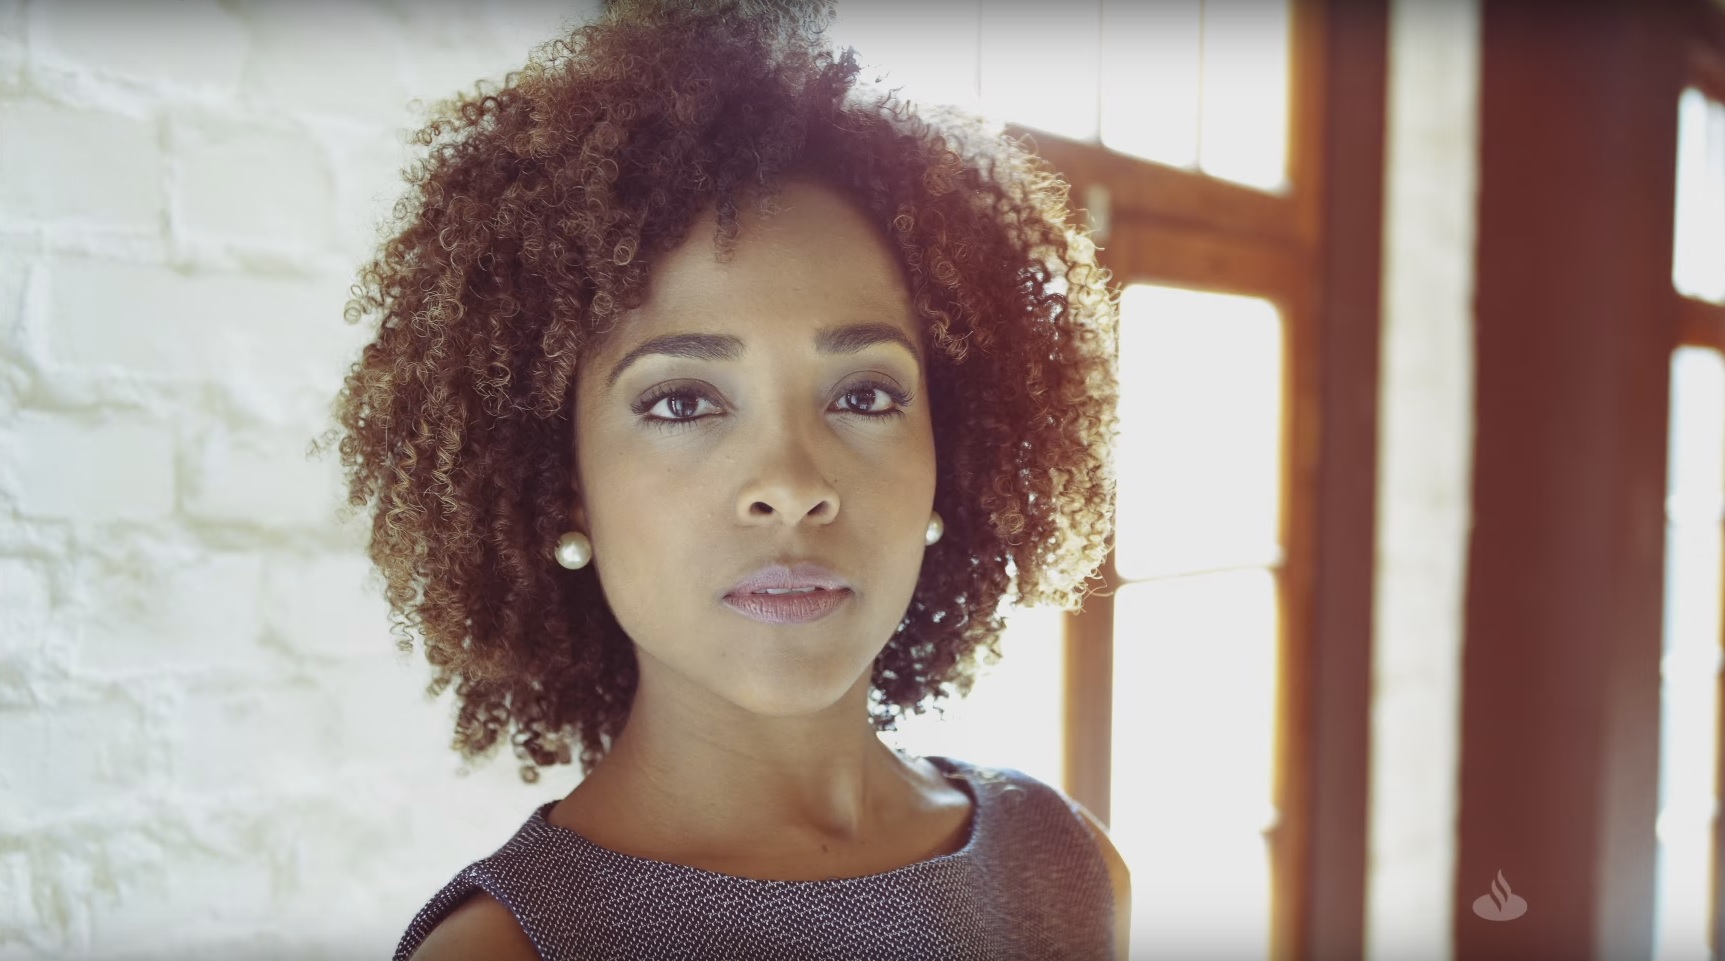 Print da tela do vídeo da nova campanha do Santander. No centro, há a imagem de uma mulher negra.